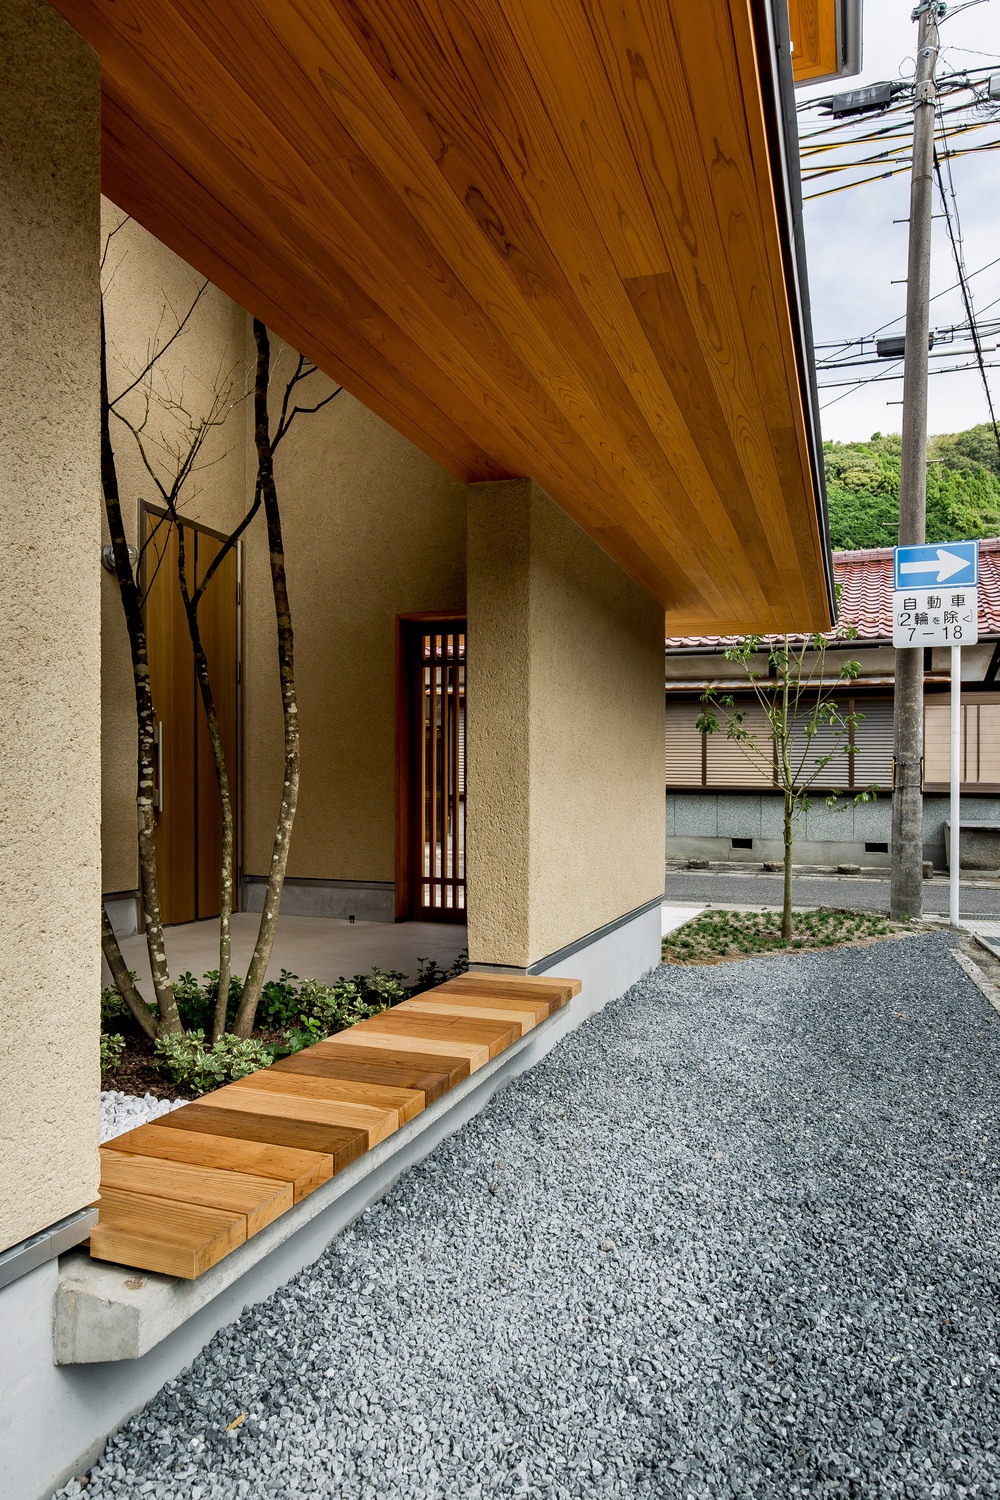 Ngôi nhà bình yên đến nao lòng với khoảng sân vườn thiết kế nghệ thuật đẹp như tranh vẽ ở Nhật - Ảnh 6.